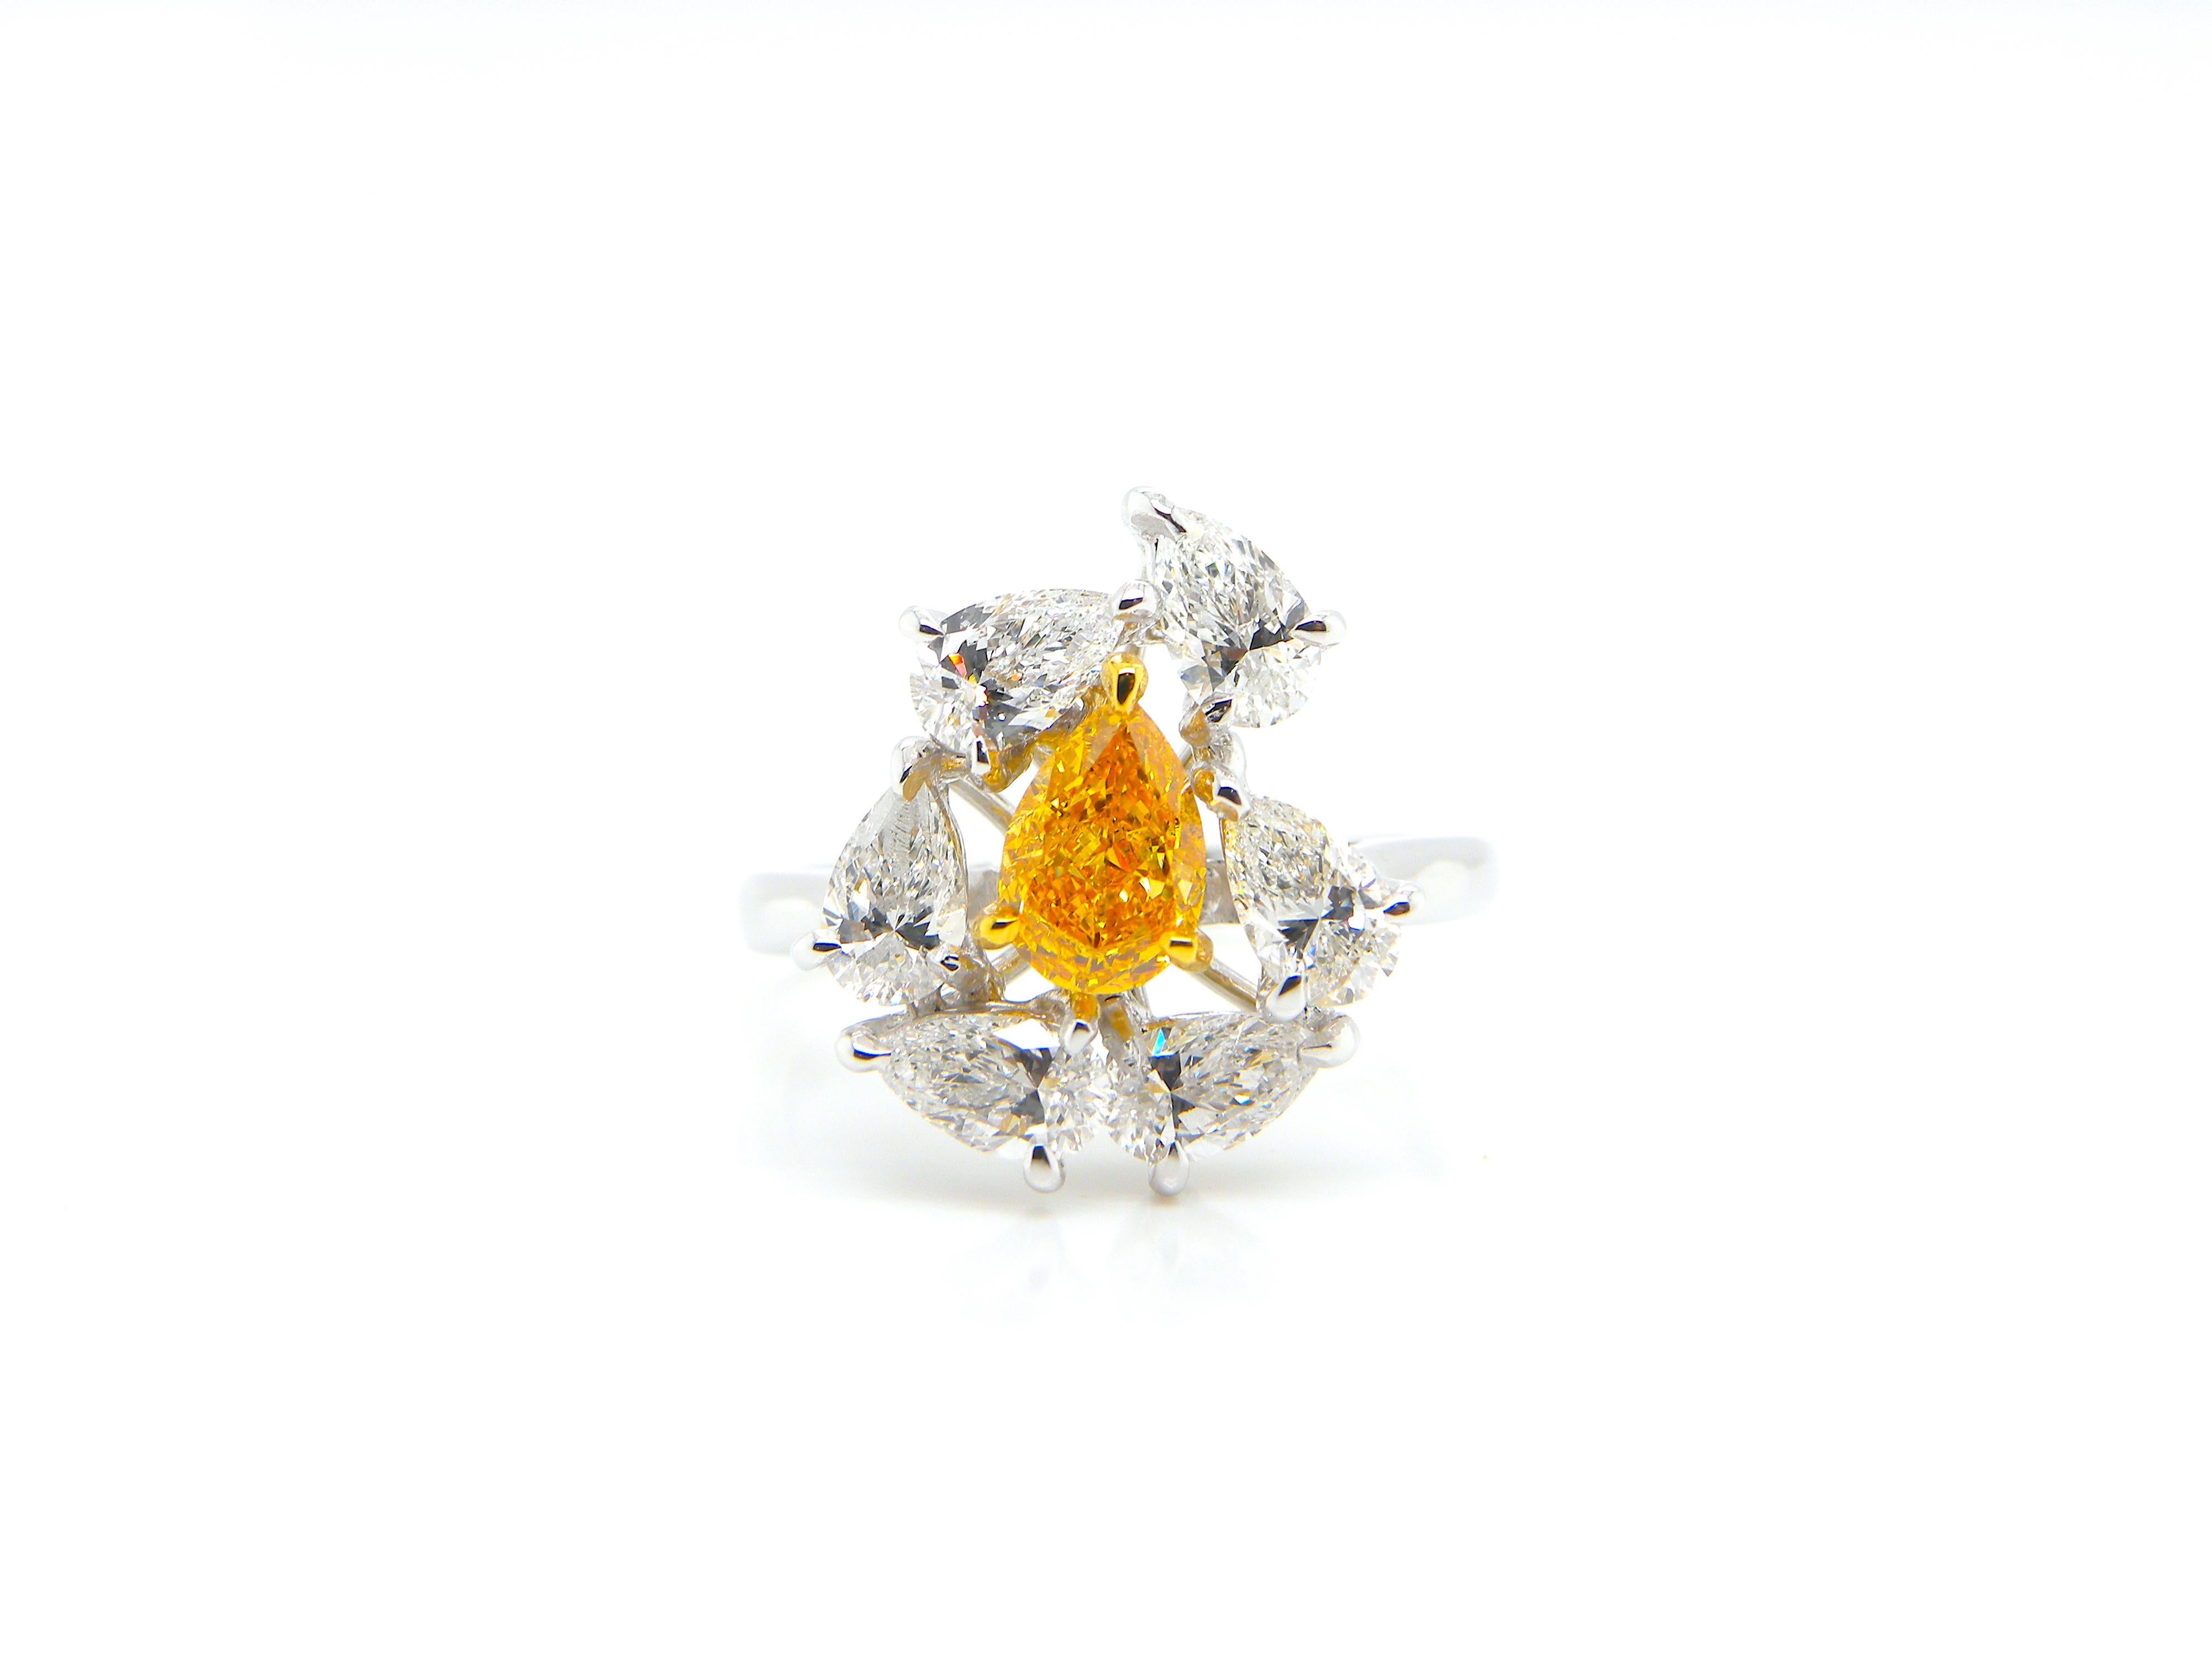 Contemporary 0.67 Carat GIA Certified Fancy Vivid Yellow-Orange Diamond and Diamond Ring